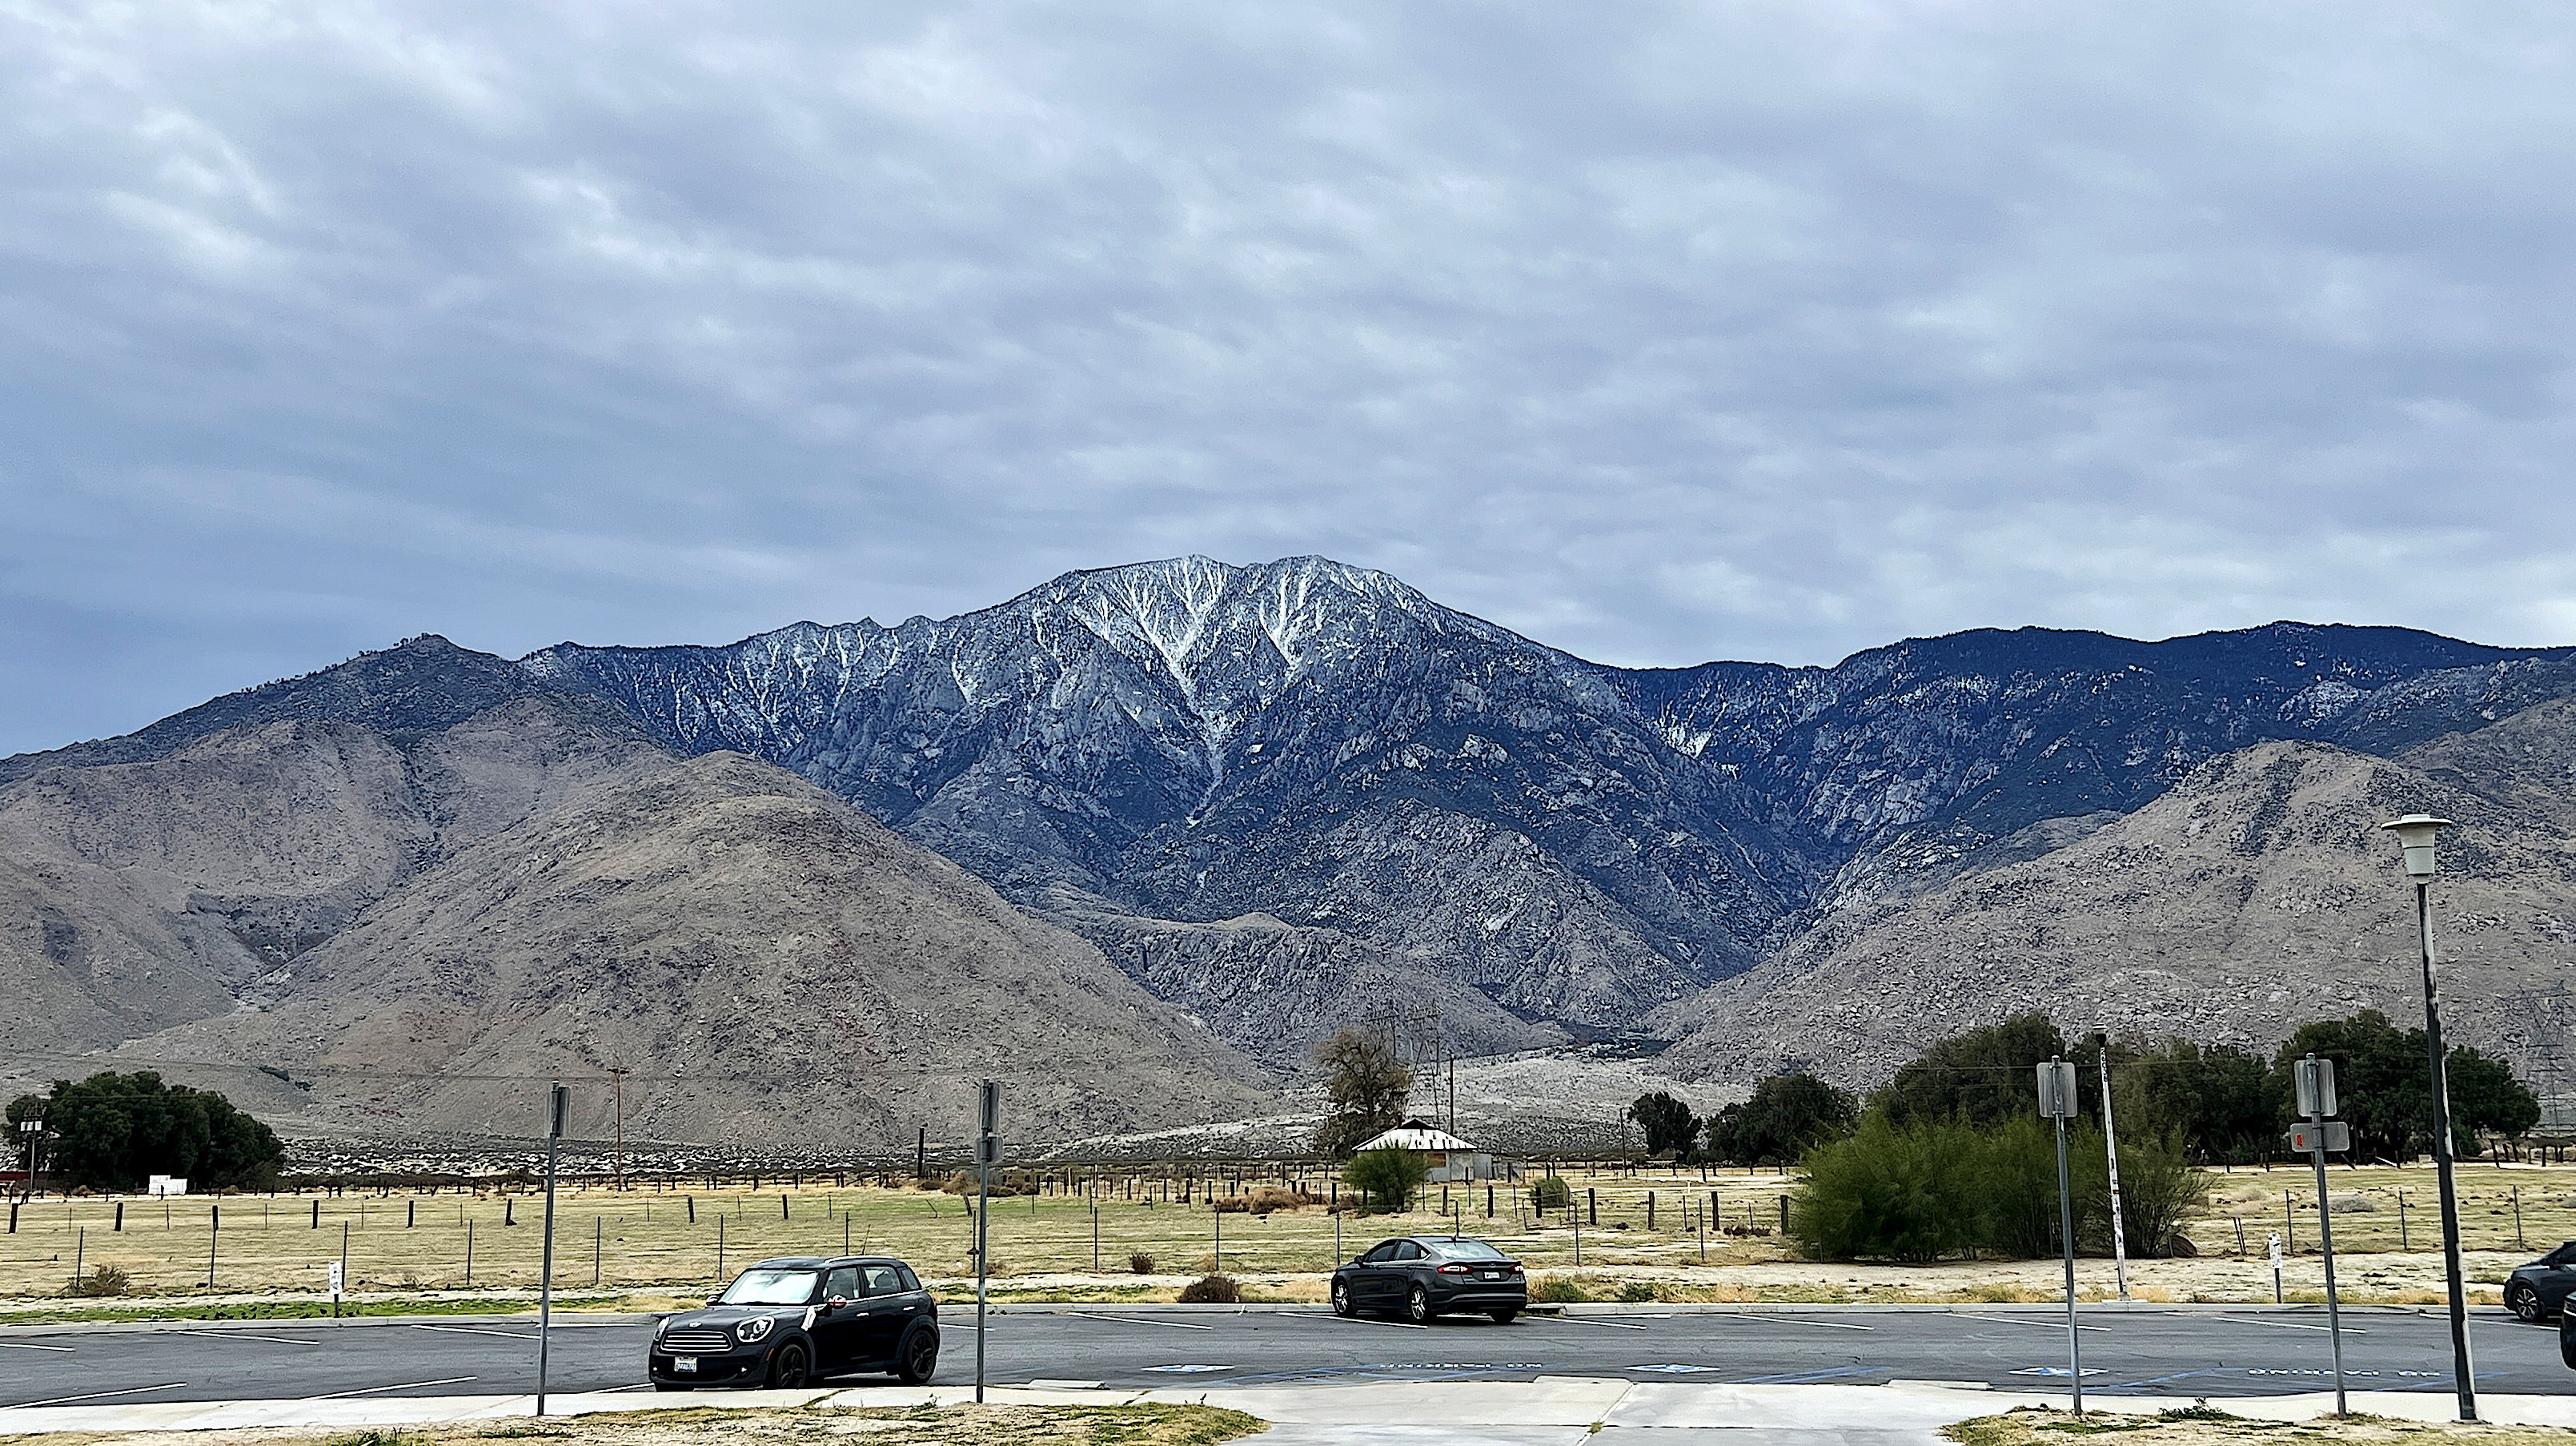 Blick von der Raststätte auf den San Jacinto Peak. Trotz 3'302 Metern über Meer hat es fast zur Hälfte Bäume. Die obere Hälfte des Gipfels ist mit frischem Schnee bedeckt.